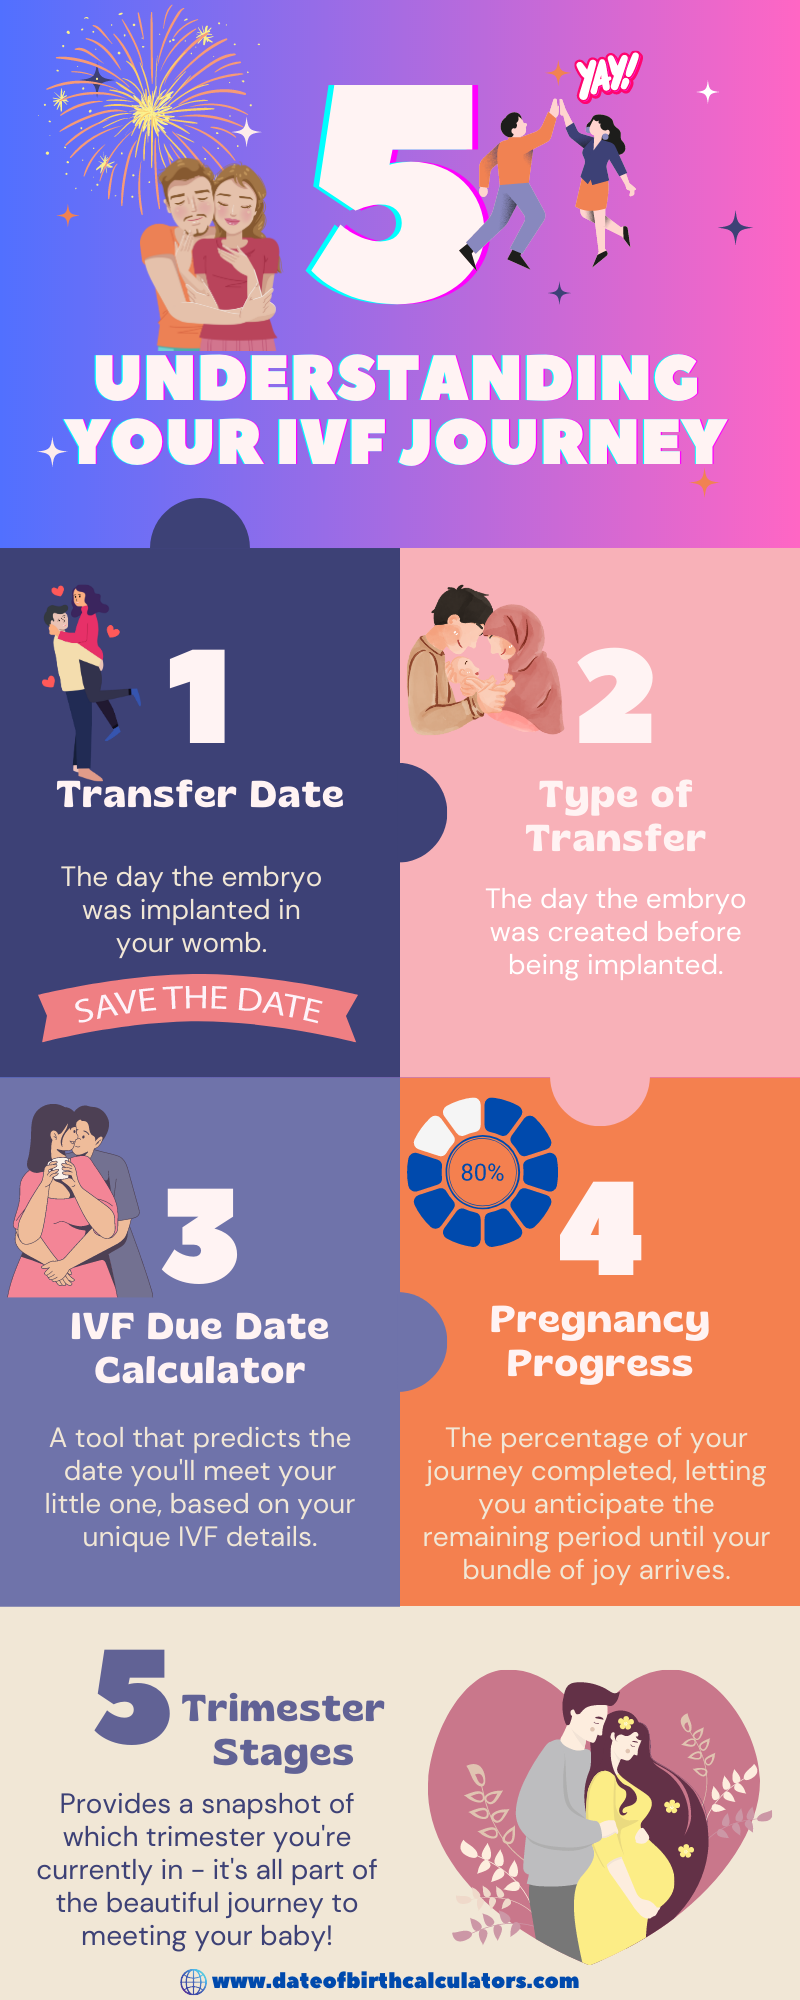 IVF Due Date Calculator